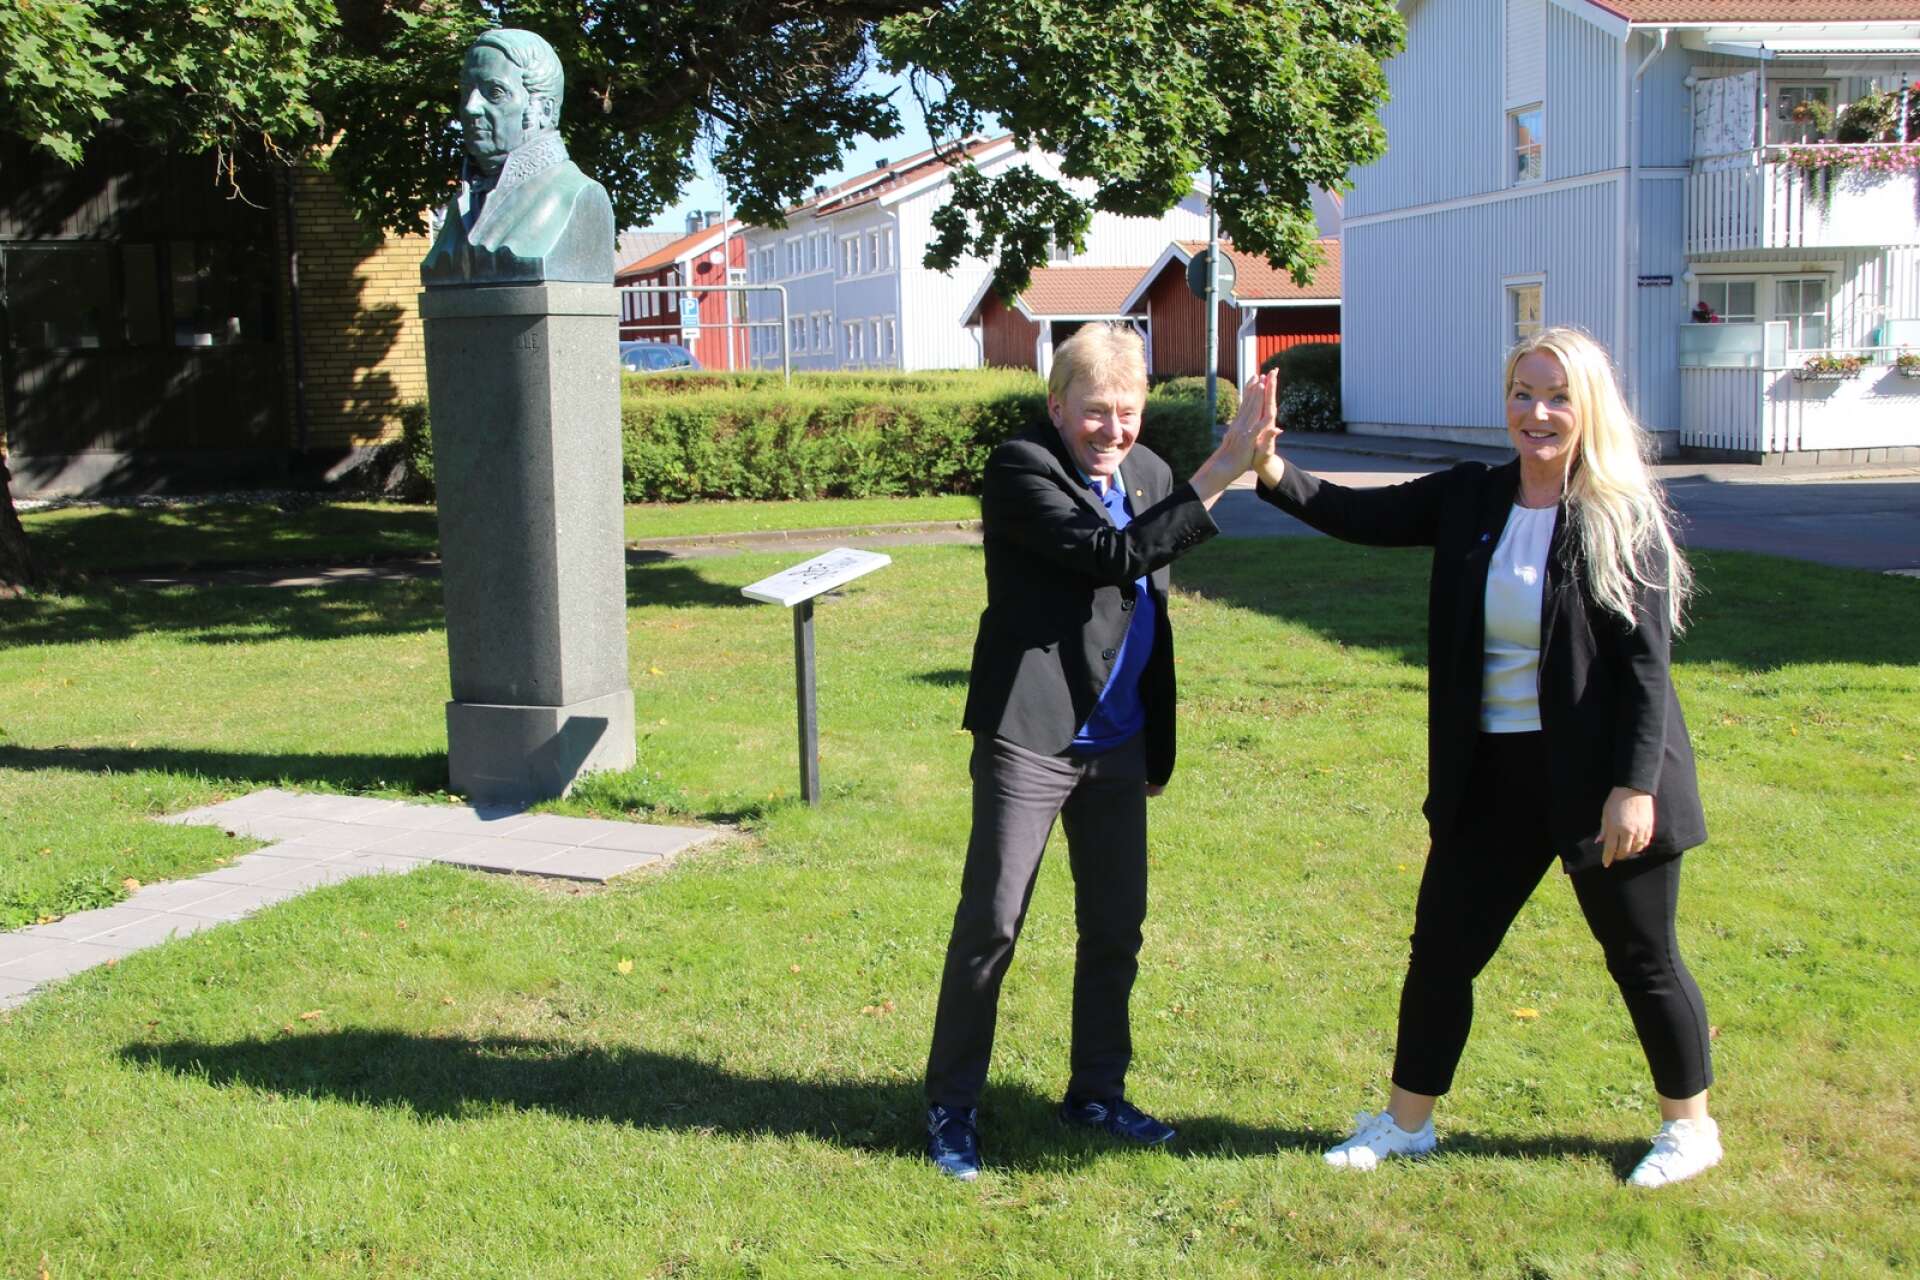 Christer Olsson (M) och Cecilia Albertsson (M) vill utöka samarbetet mellan Filipstads kommun och Hällefors kommun, samt samarbetet mellan Region Värmland och Region Örebro län. De vill göra det i majoritet, men flaggar för att de även kommer att samarbeta över kommun- och länsgränserna även om de får arbeta i opposition.